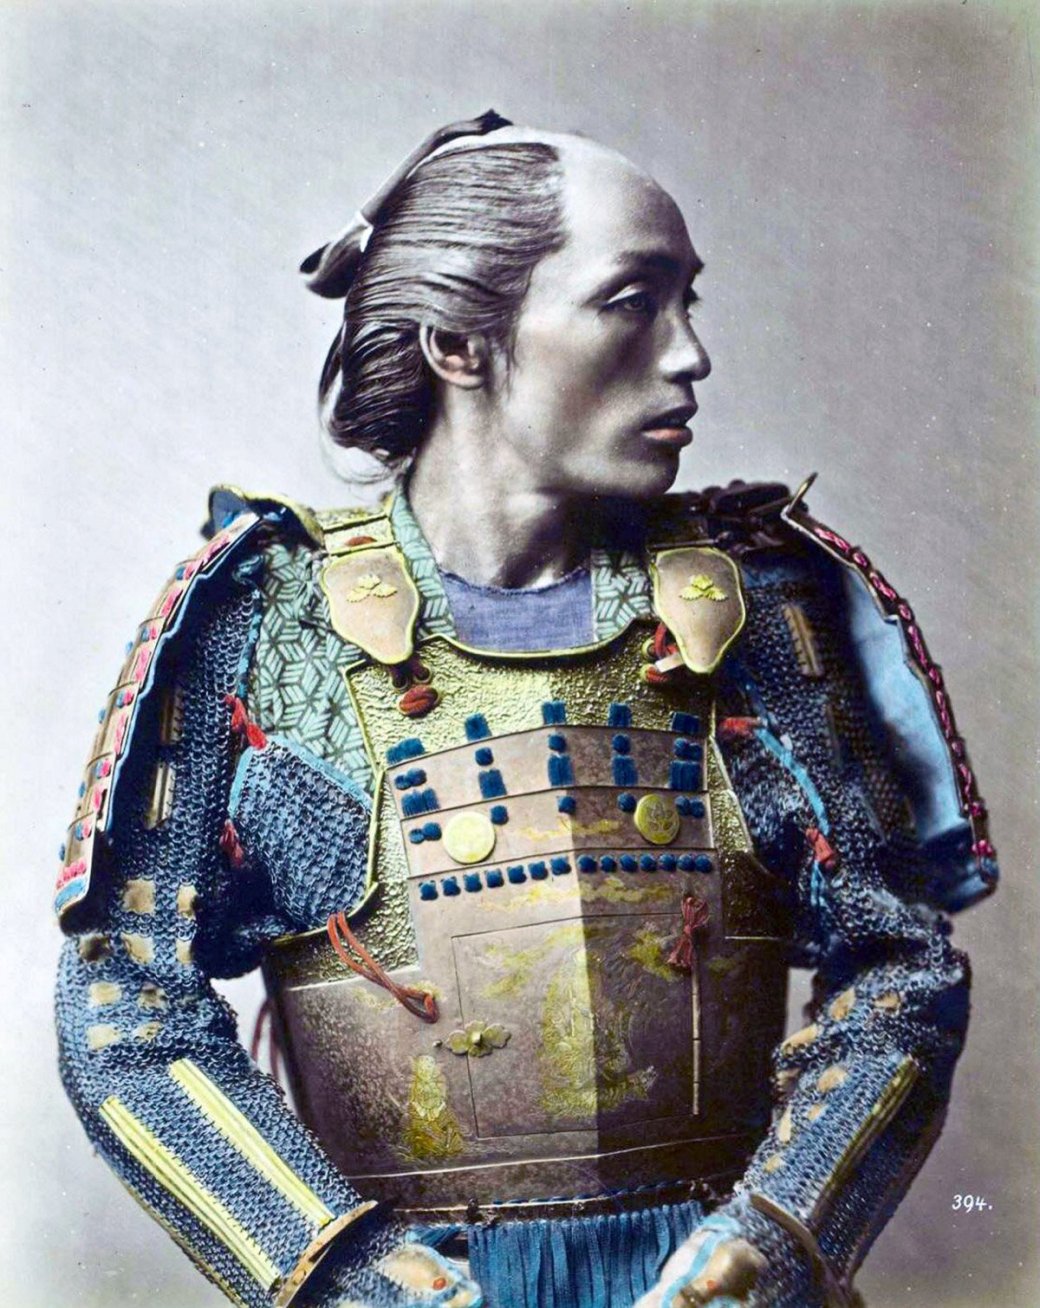 Галерея Настоящие самураи и необычные костюмы на редких старых фотографиях - 19 фото